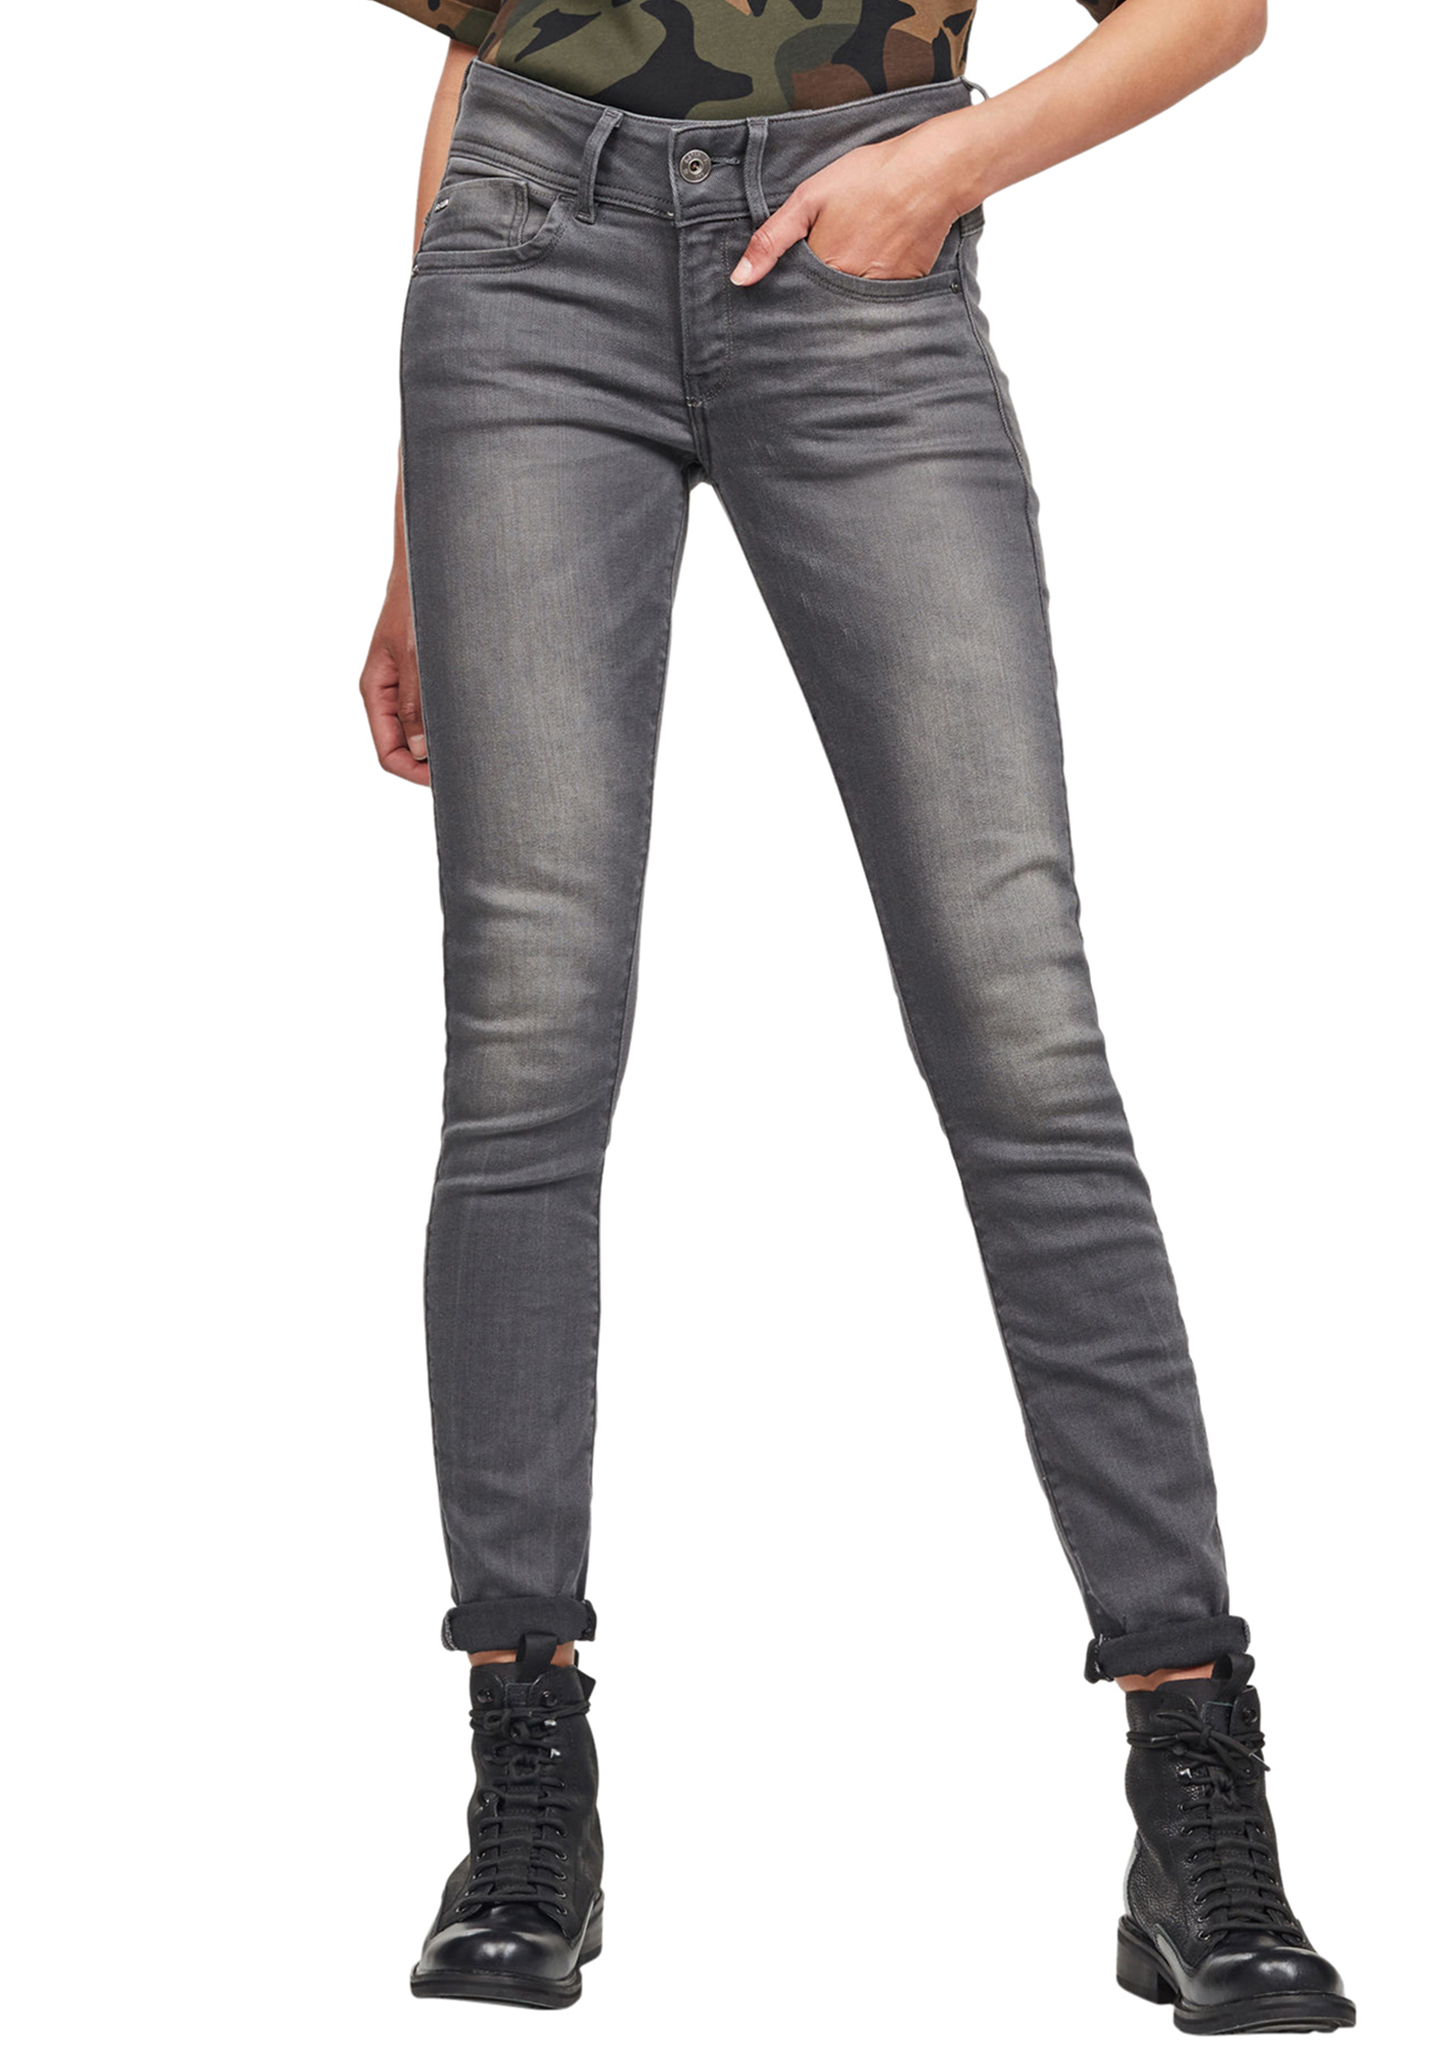 G-Star Lynn Mid Skinny Slander Grey R Superstretch Skinny Jeans weiß 31/28